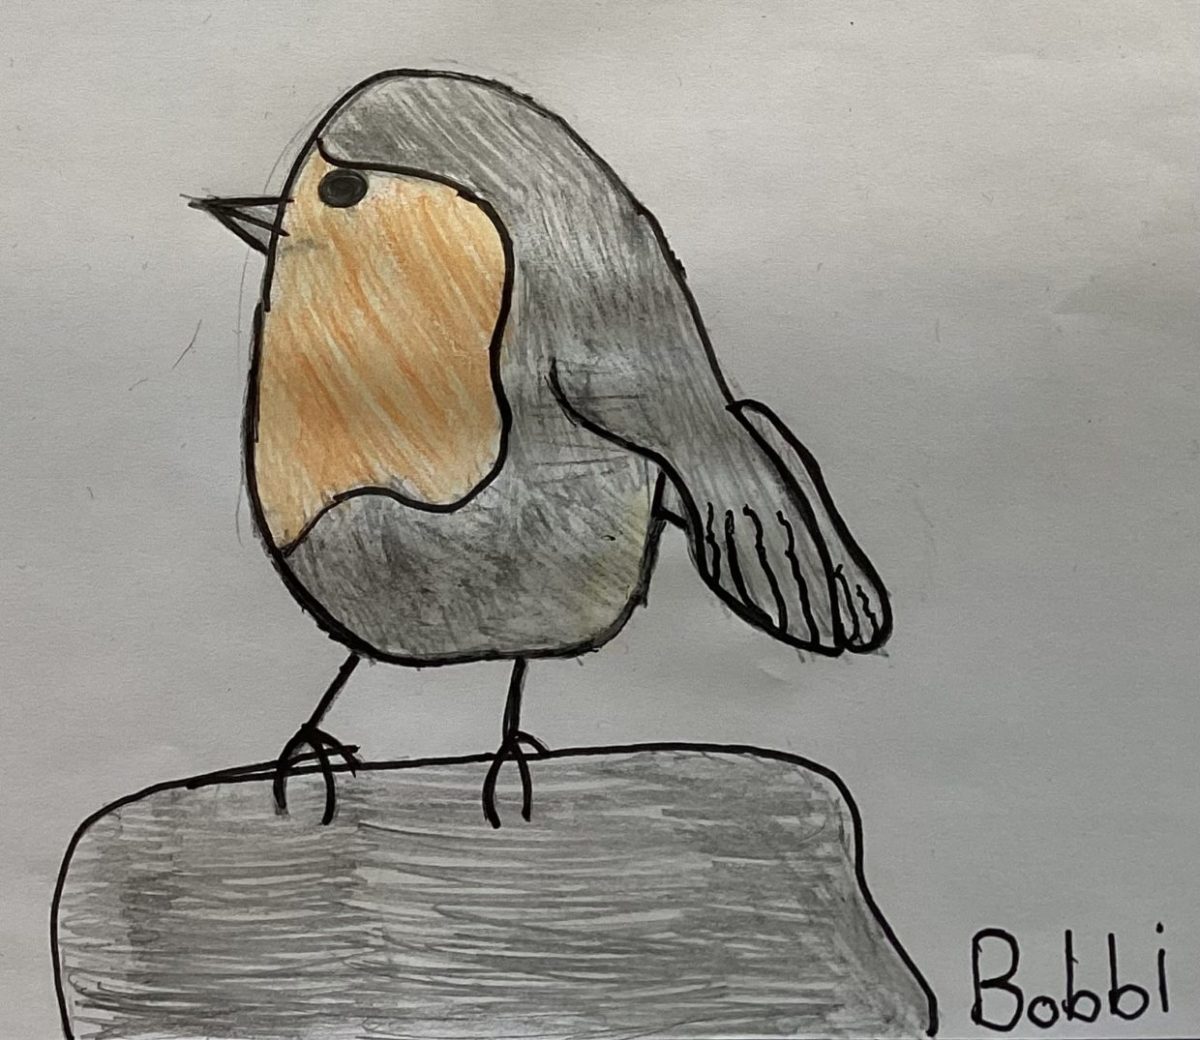 Robin-Bobbi